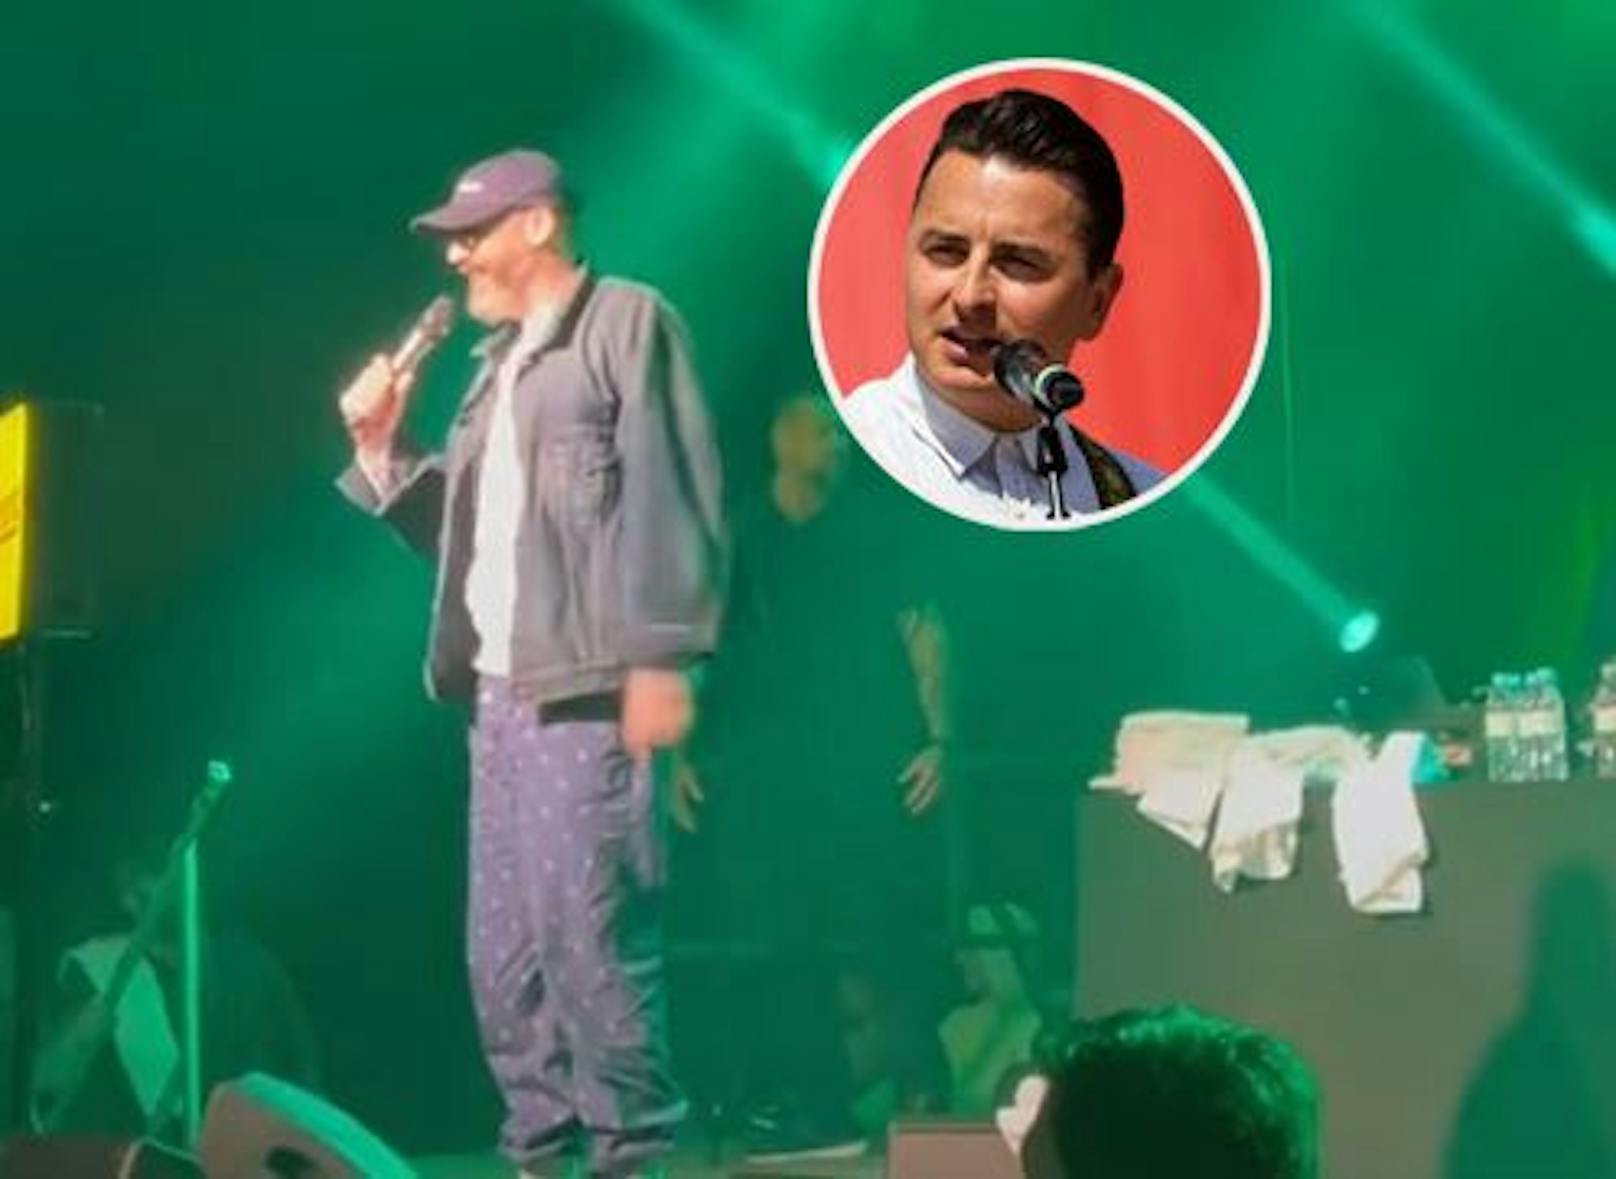 Rapper Sido singt in Amstetten plötzlich Gabalier-Song